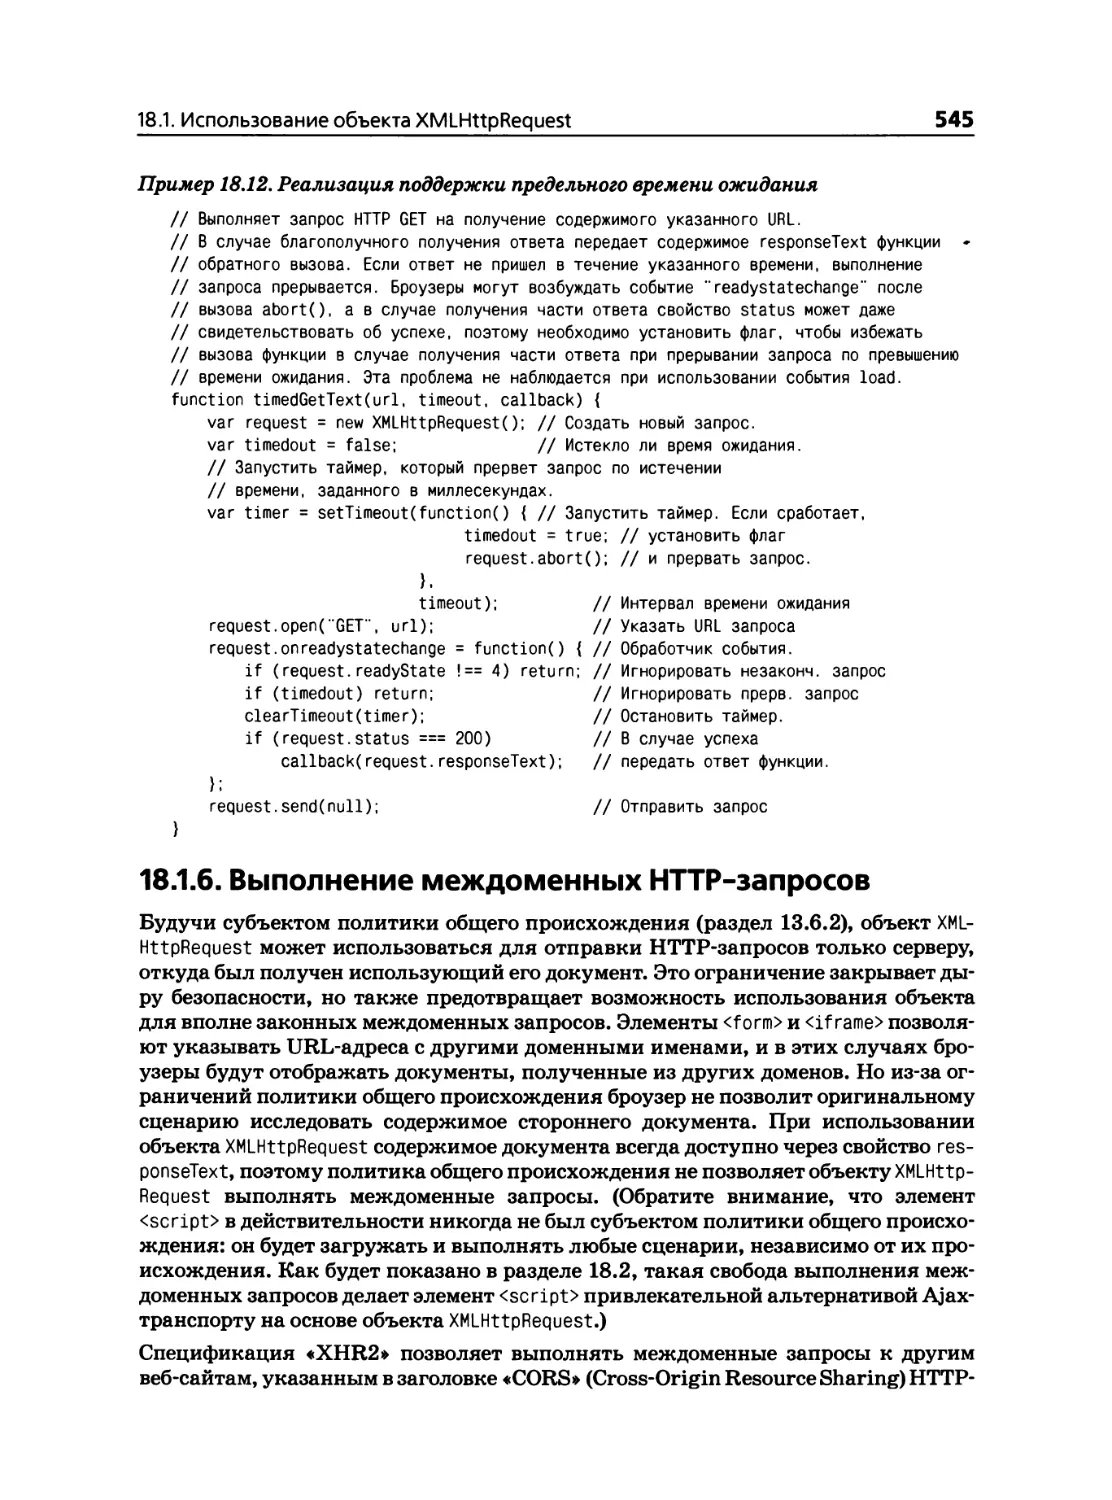 18.1.6. Выполнение междоменных HTTP-запросов